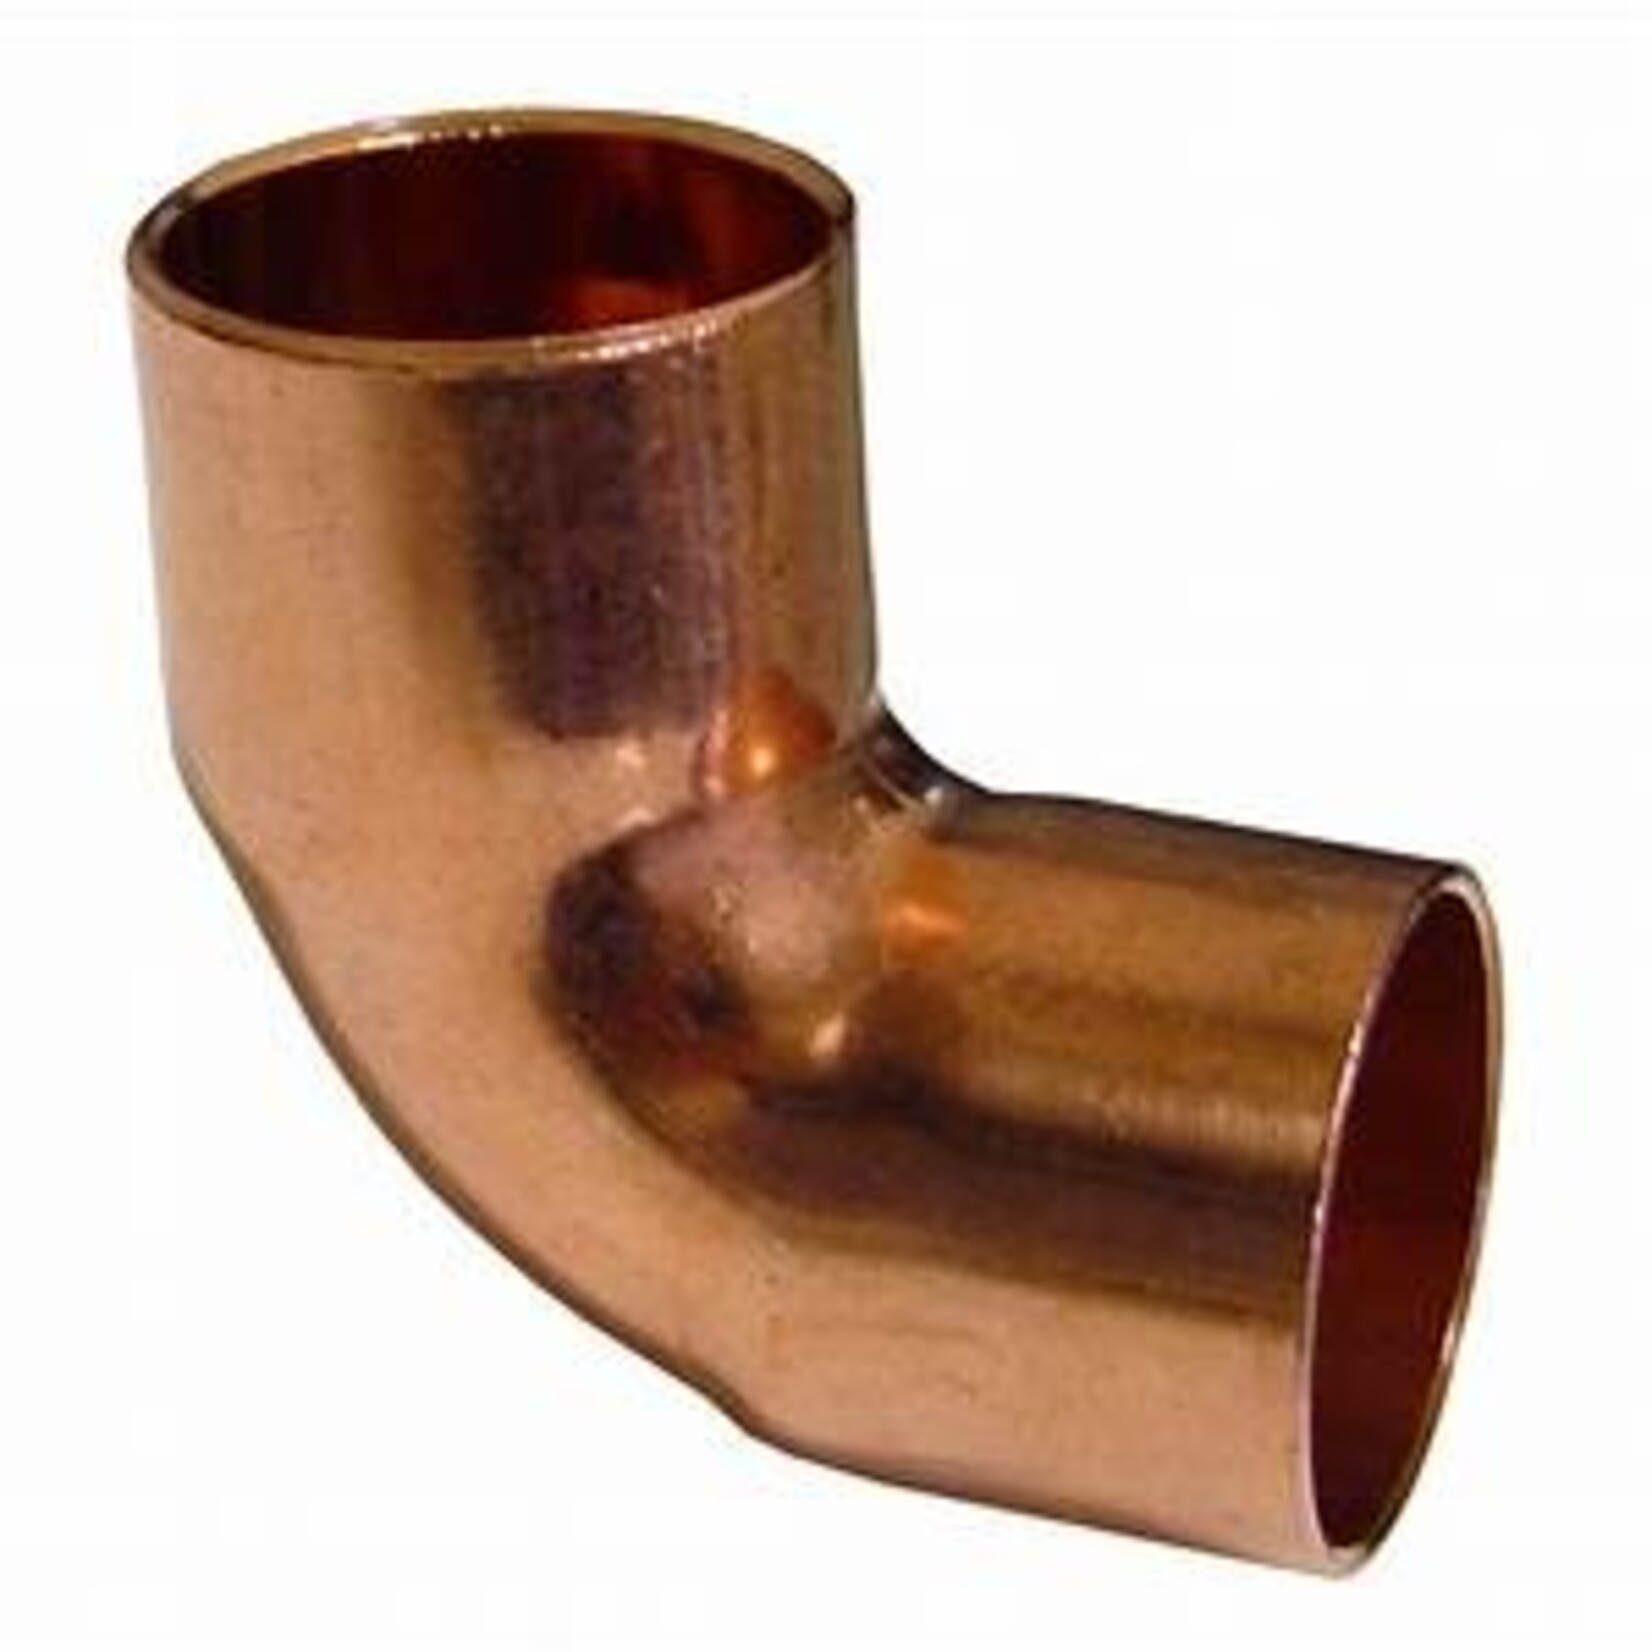 TradePro 3/8 Elbow (Copper)